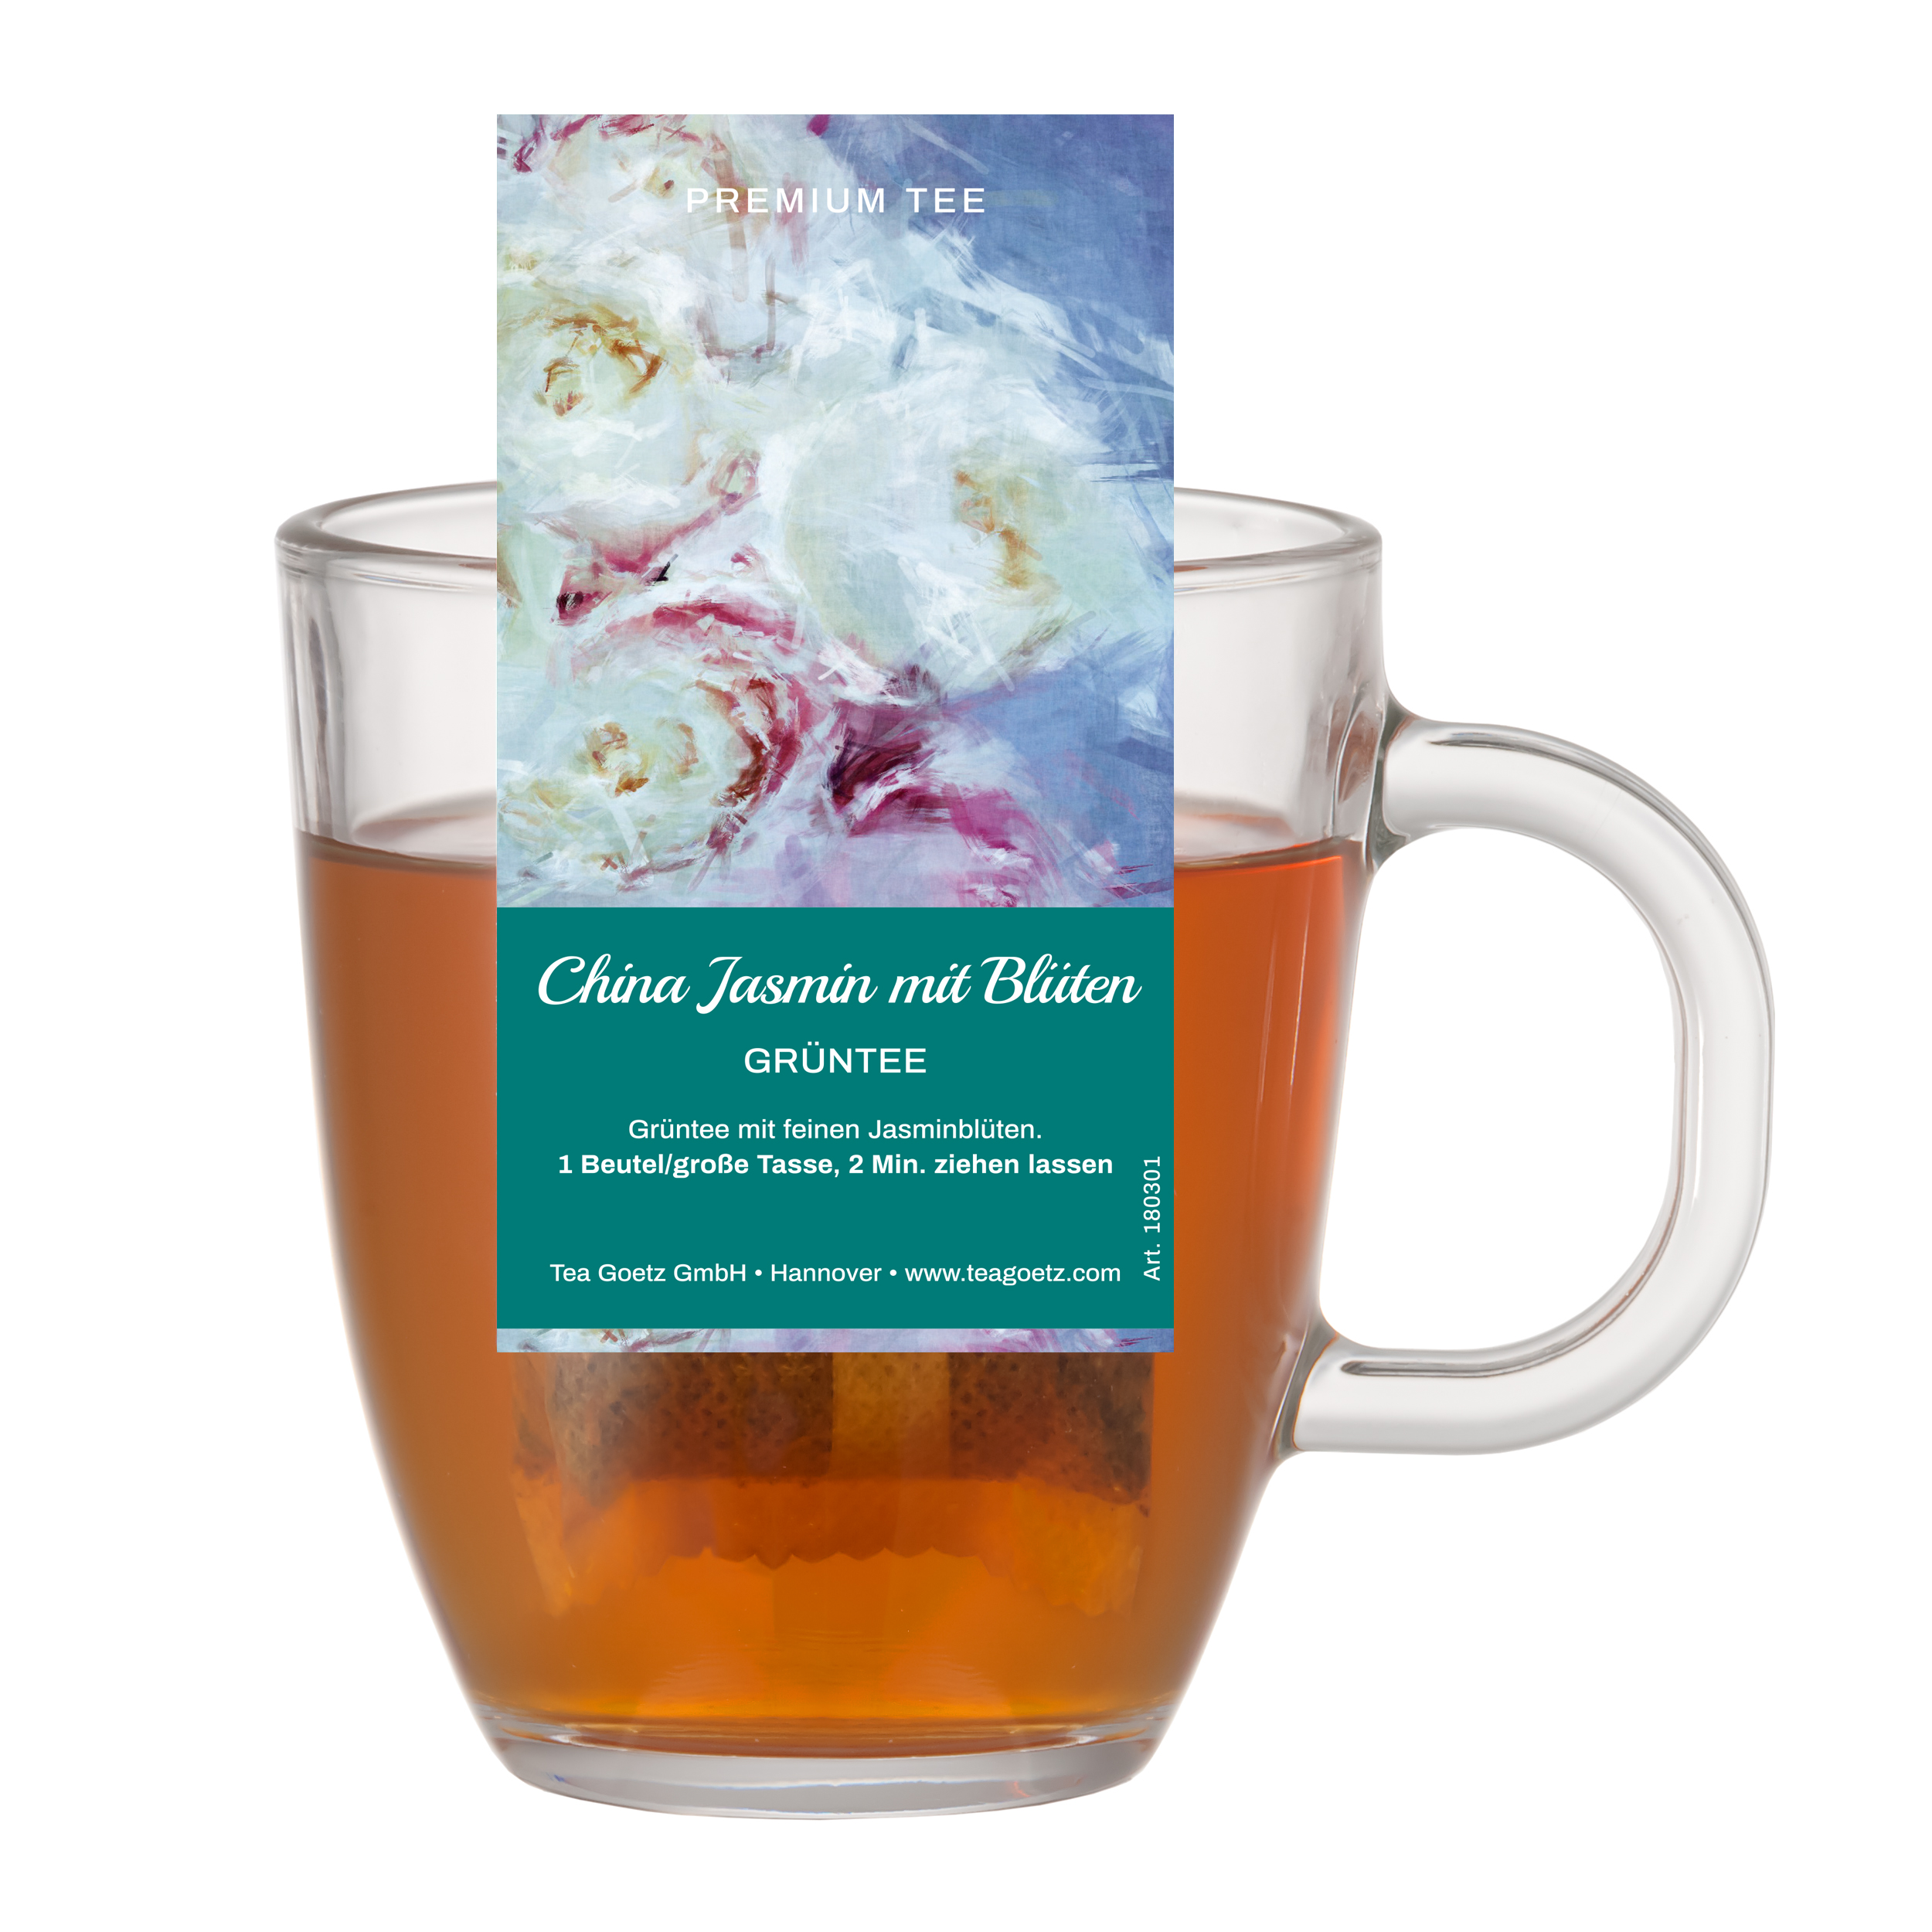 Big Tea Bag China Jasmin - aromatisierter Grüntee (Teebeutel)